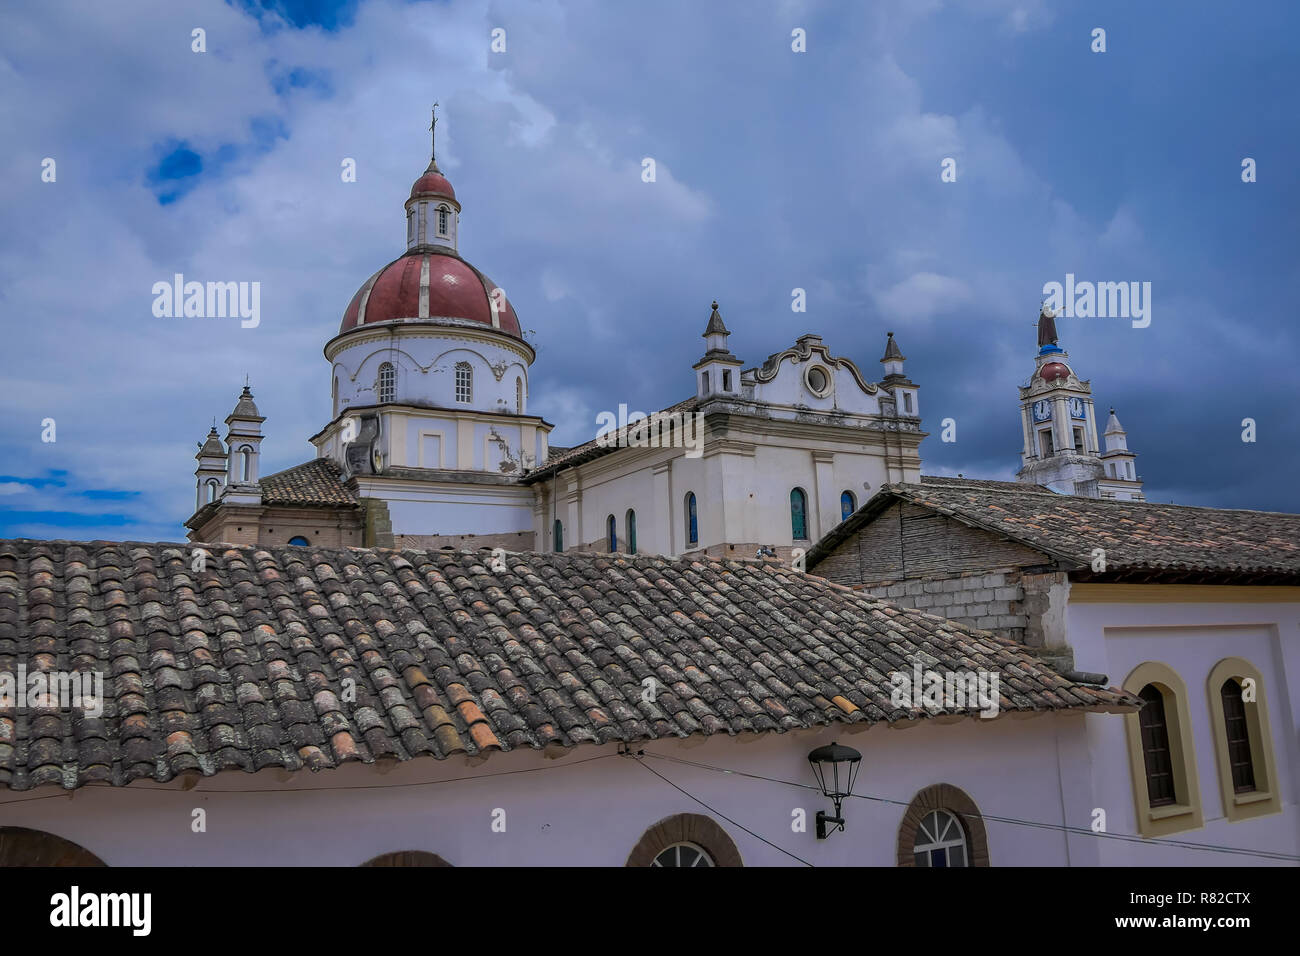 COTACACHI, Ecuador, 13. NOVEMBER 2018: Dachterrasse mit Blick auf die Matrix Kathedrale In Cotacachi Ecuador, einem kleinen Dorf, wo viel von Amerika Rentner leben Stockfoto